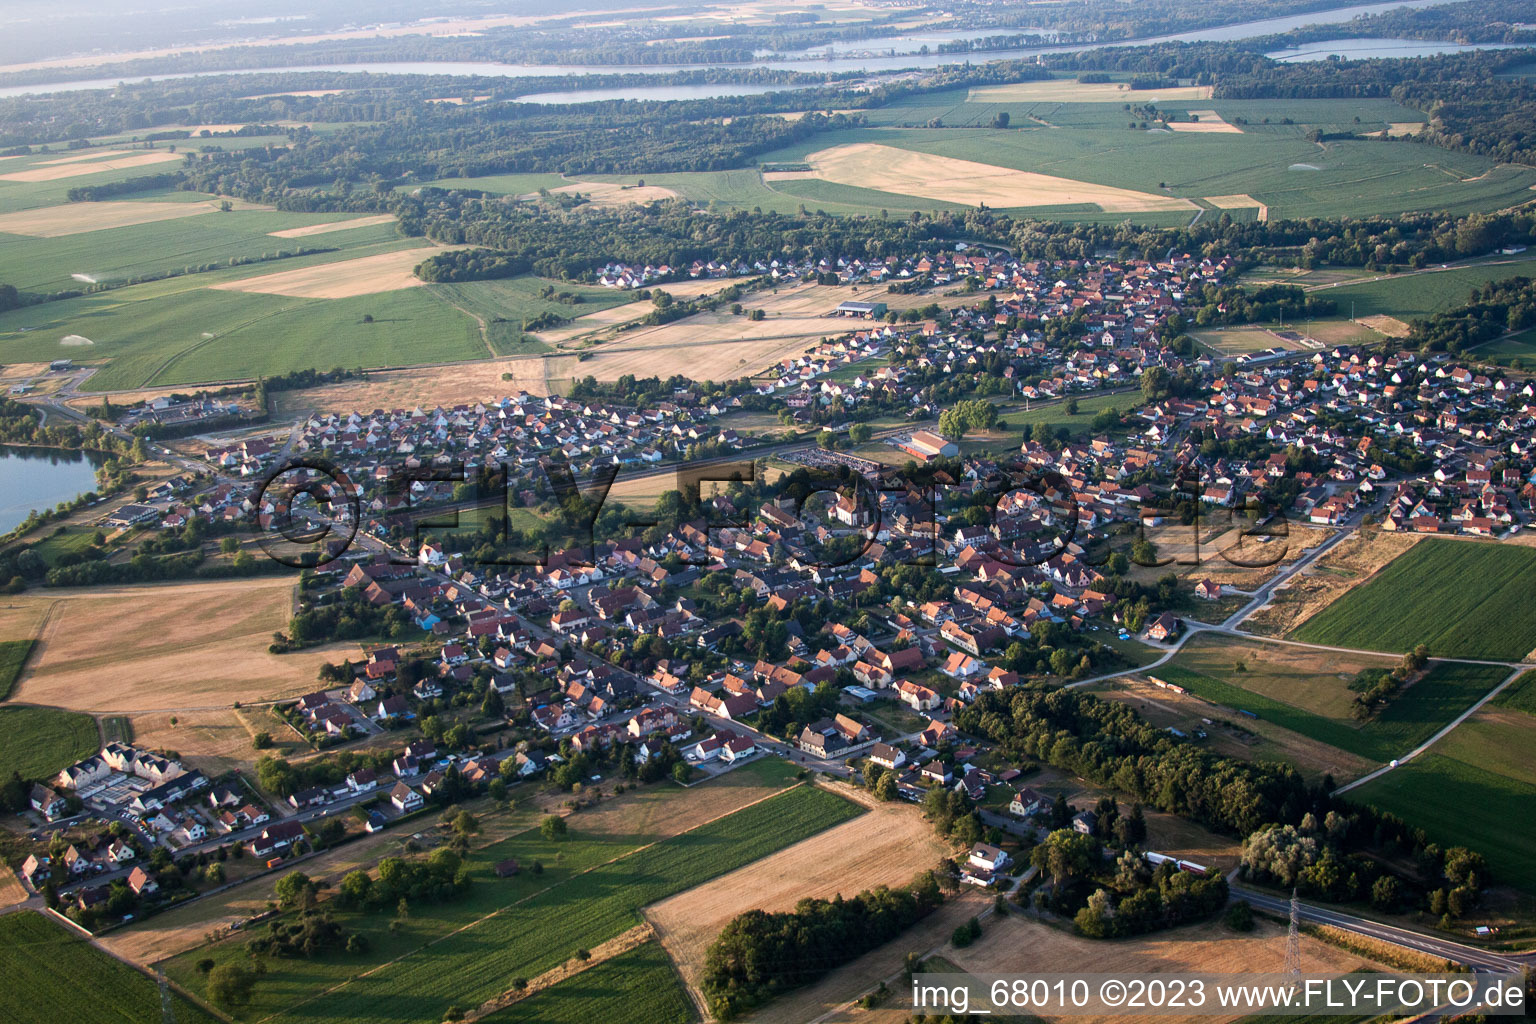 Rountzenheim im Bundesland Bas-Rhin, Frankreich aus der Luft betrachtet